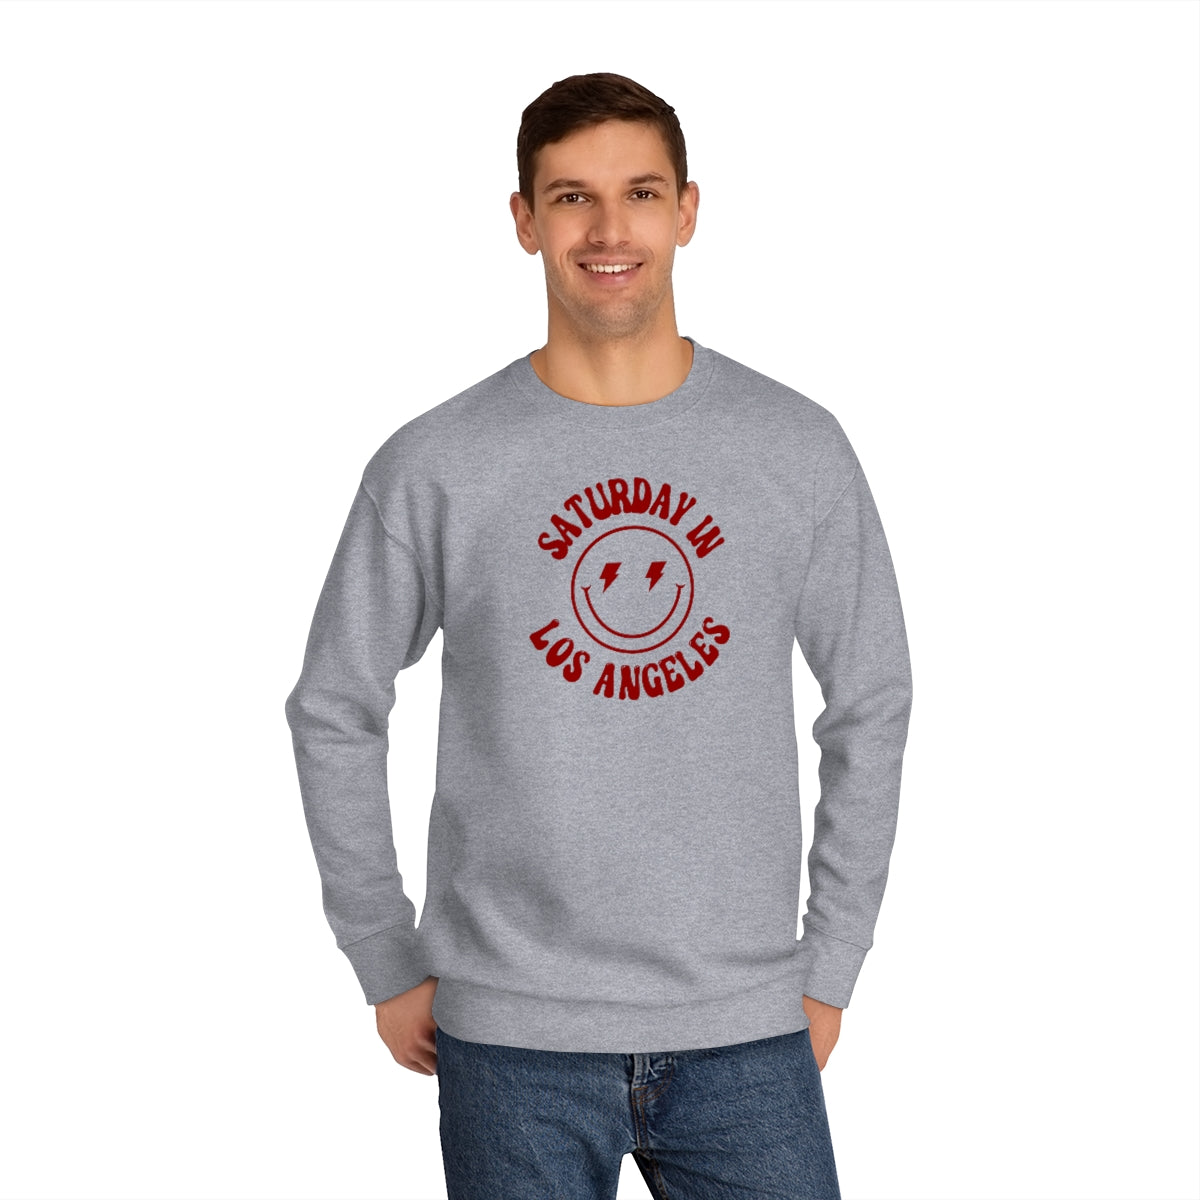 Smiley LA Crew Sweatshirt - GG - CH